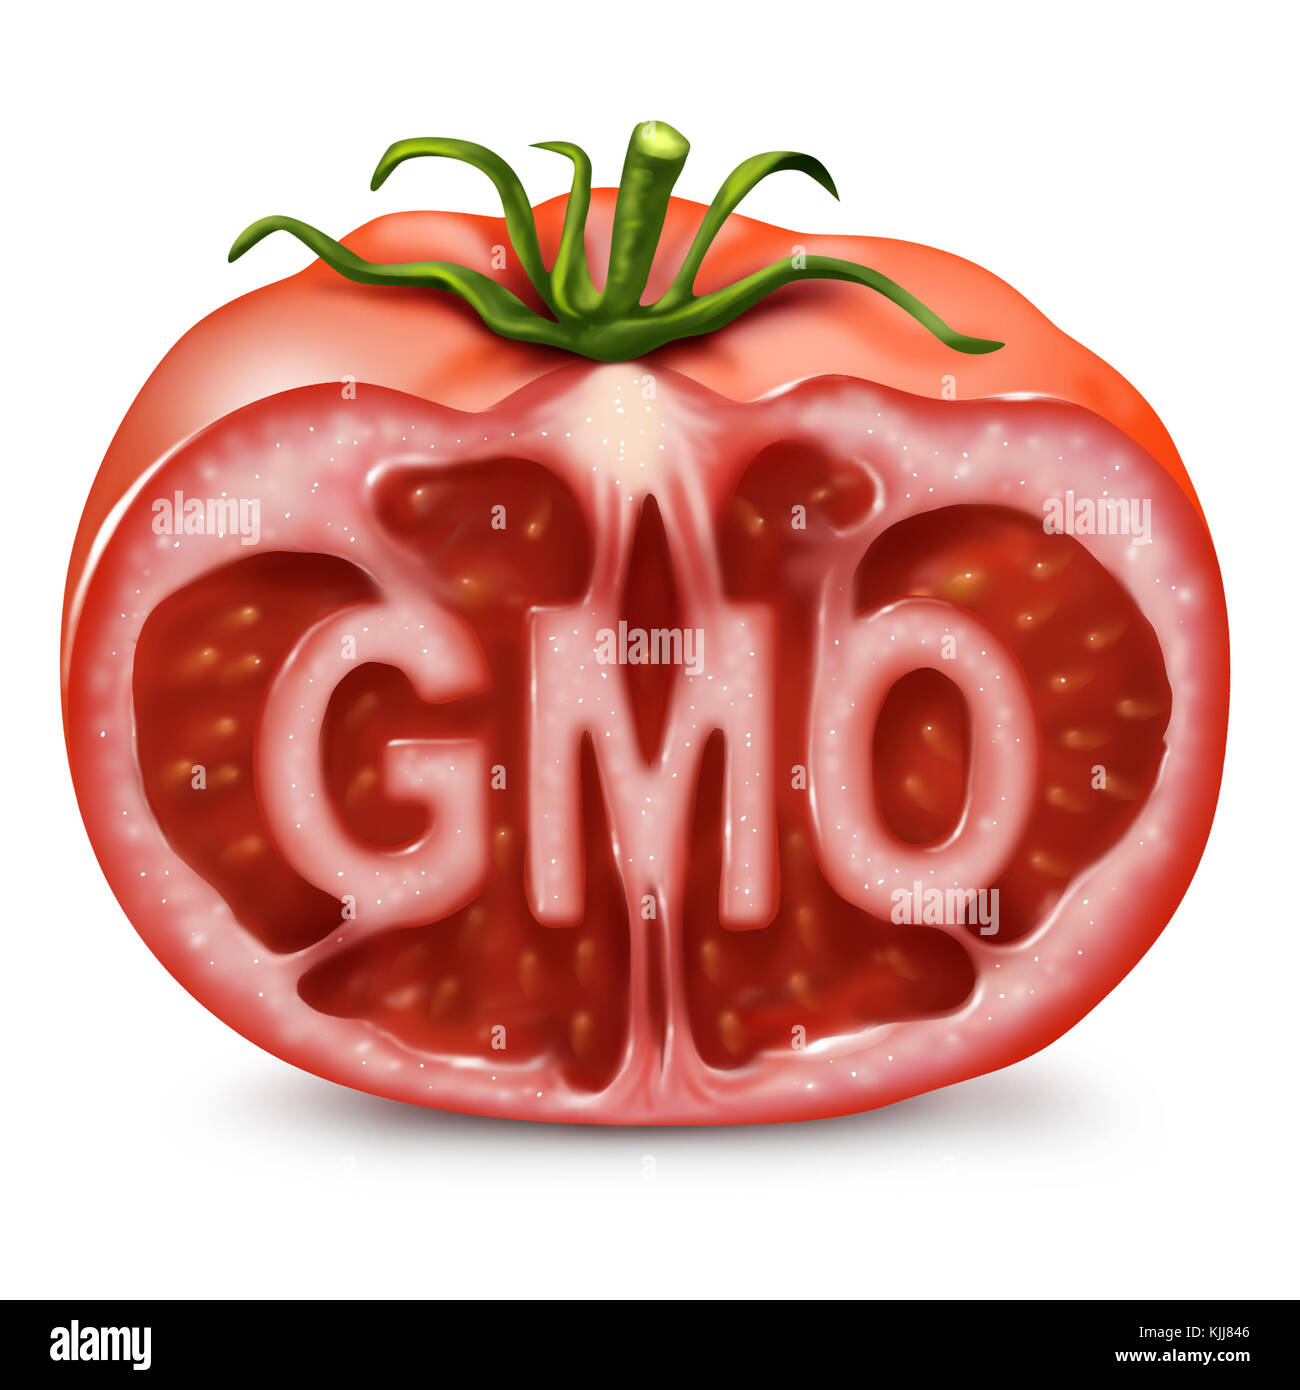 Symbole de nourriture OGM en tant qu'organisme génétiquement modifié et génie génétique dans les produits comme une tomate coupée avec du texte à l'intérieur comme dans un style d'illustration 3D. Banque D'Images